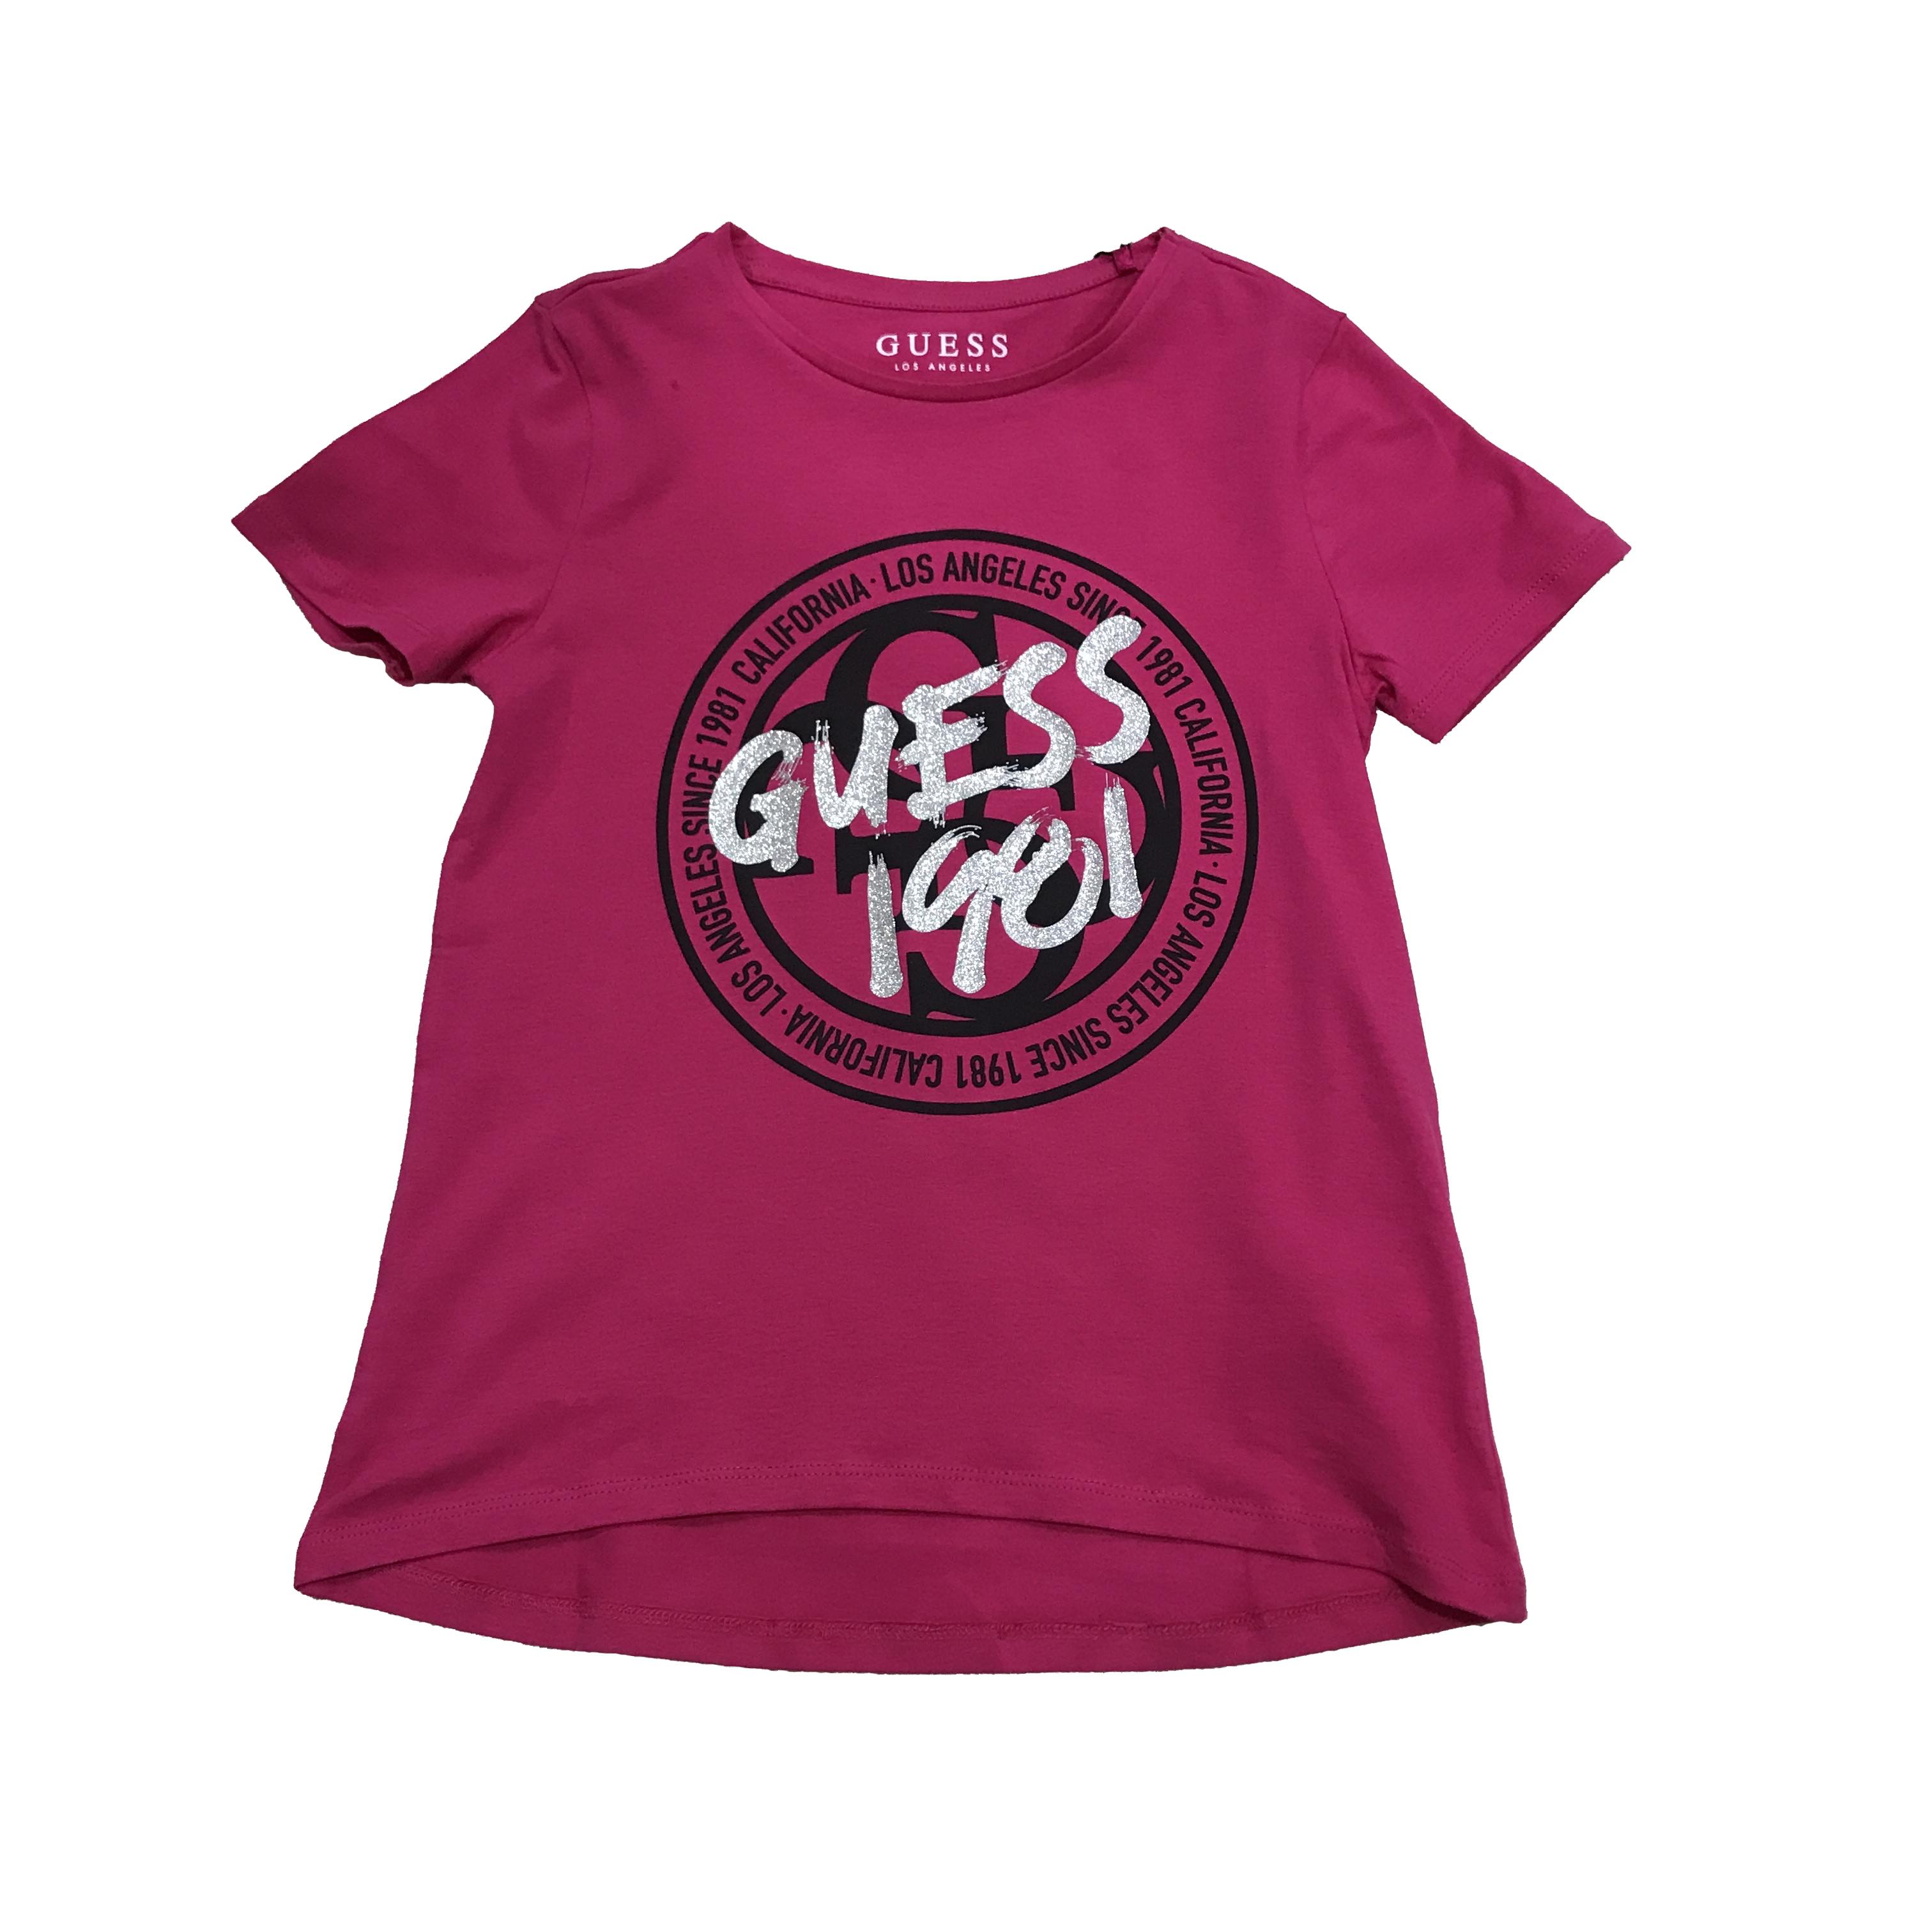 Camiseta GUESS Mujer (Multicolor - 6 Años)